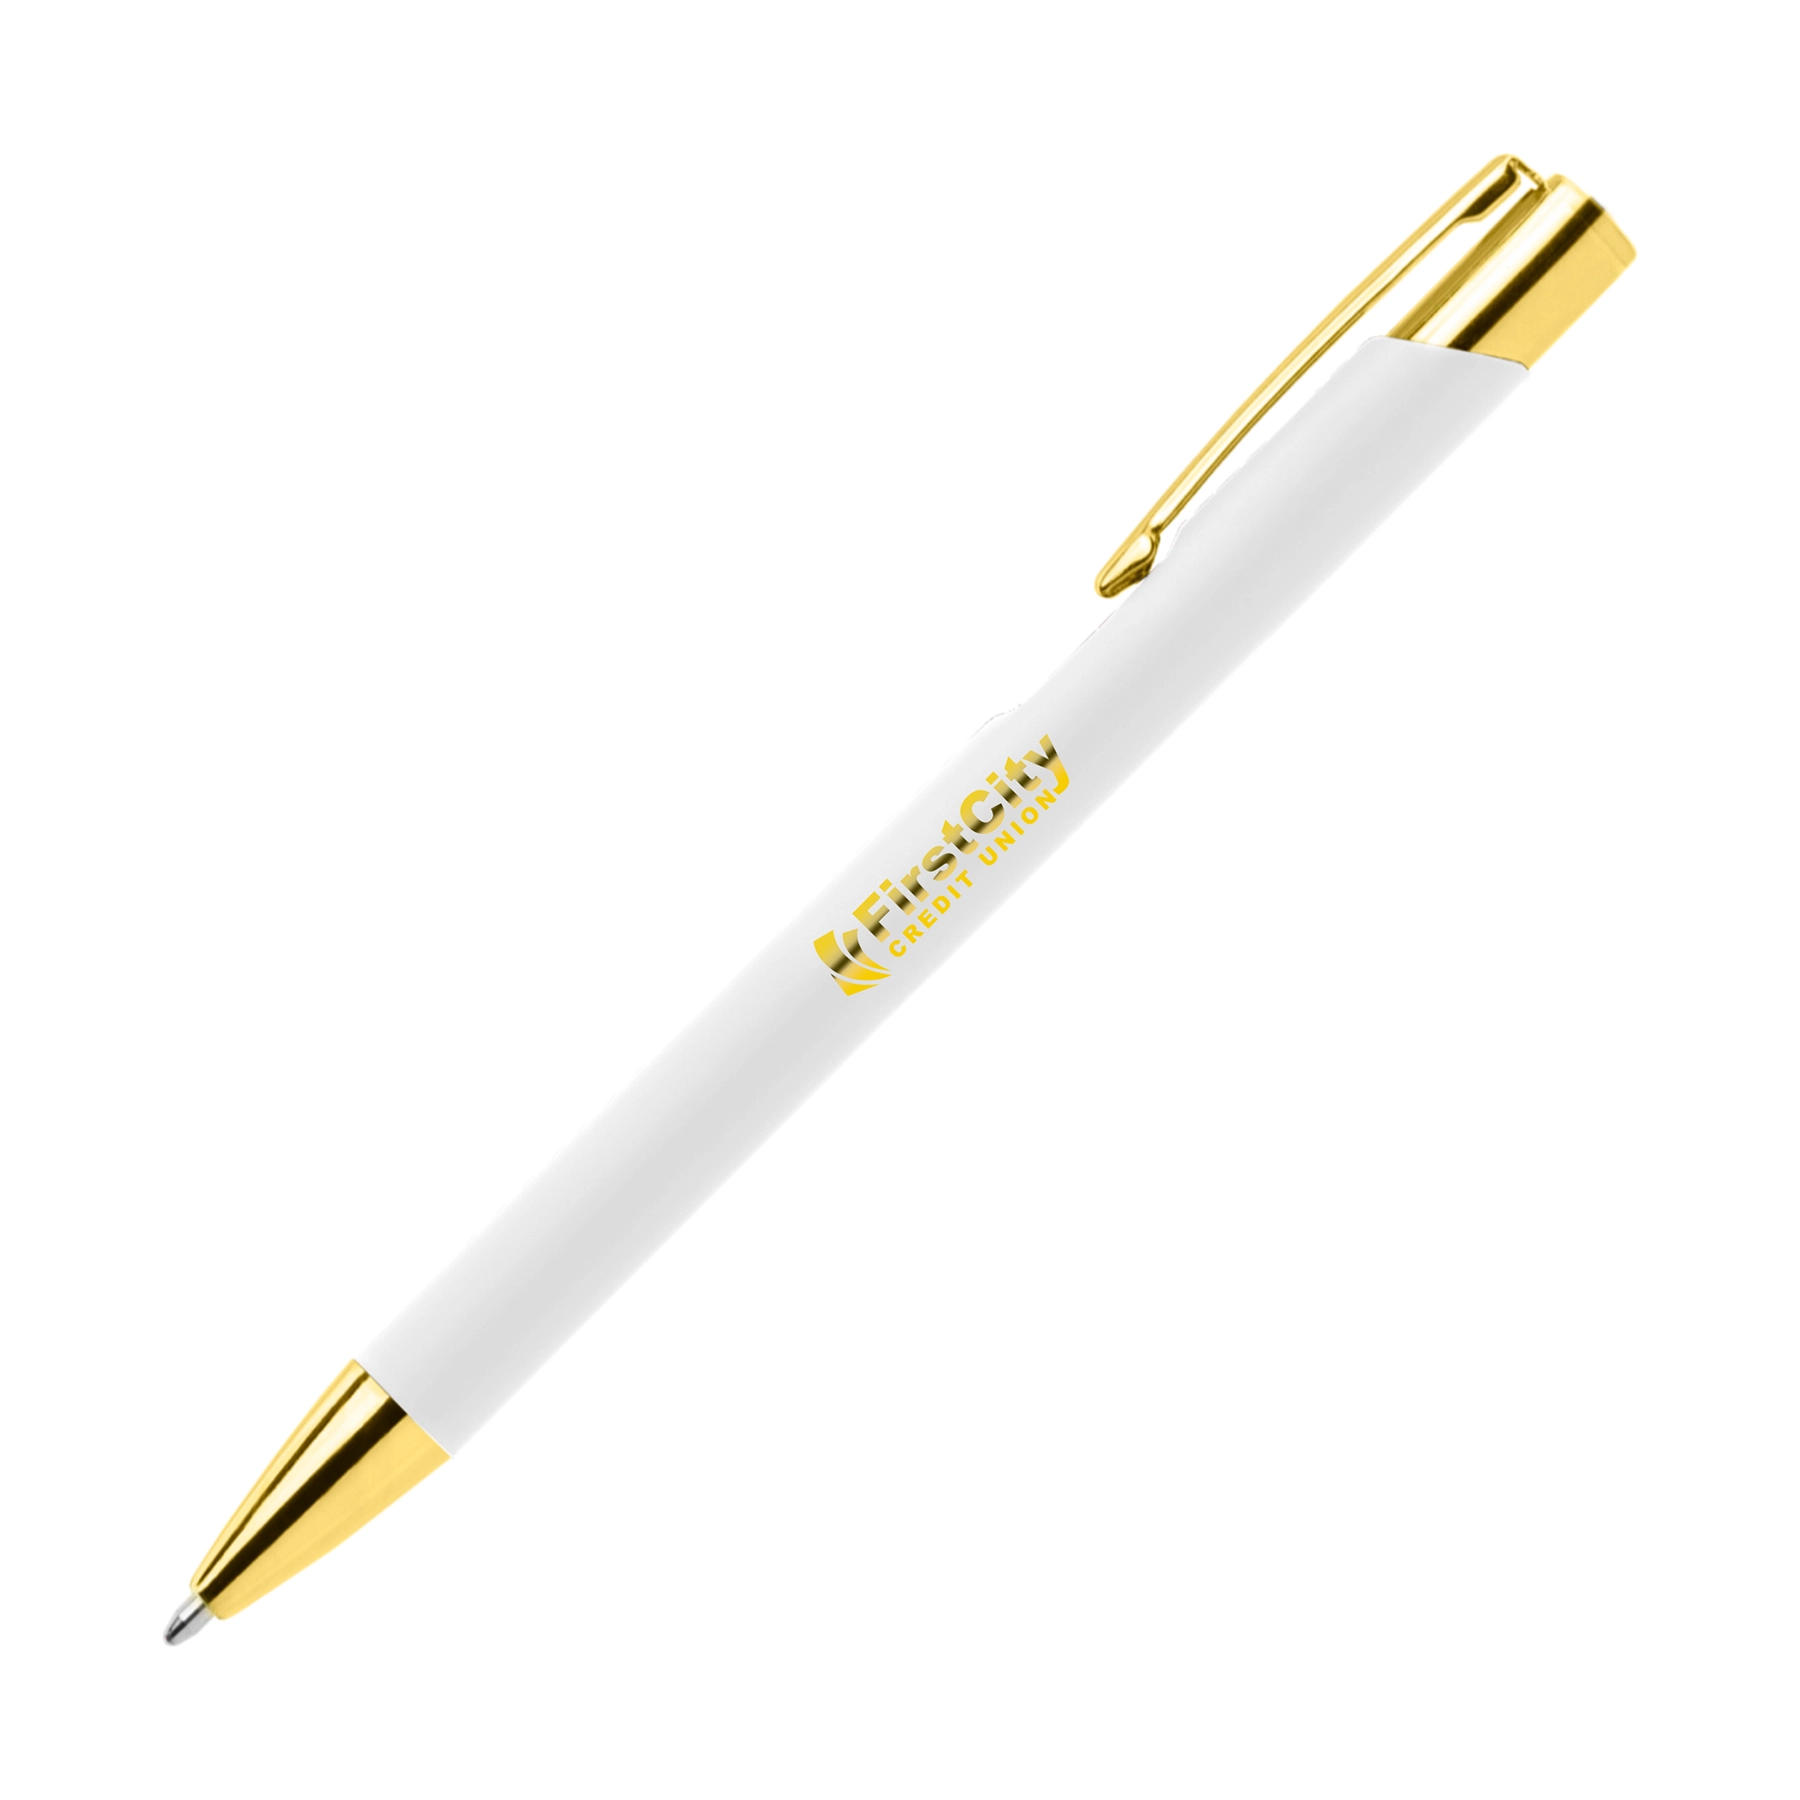 Penna personalizzata Gold Stylus Soft-Touch: un tocco di classe